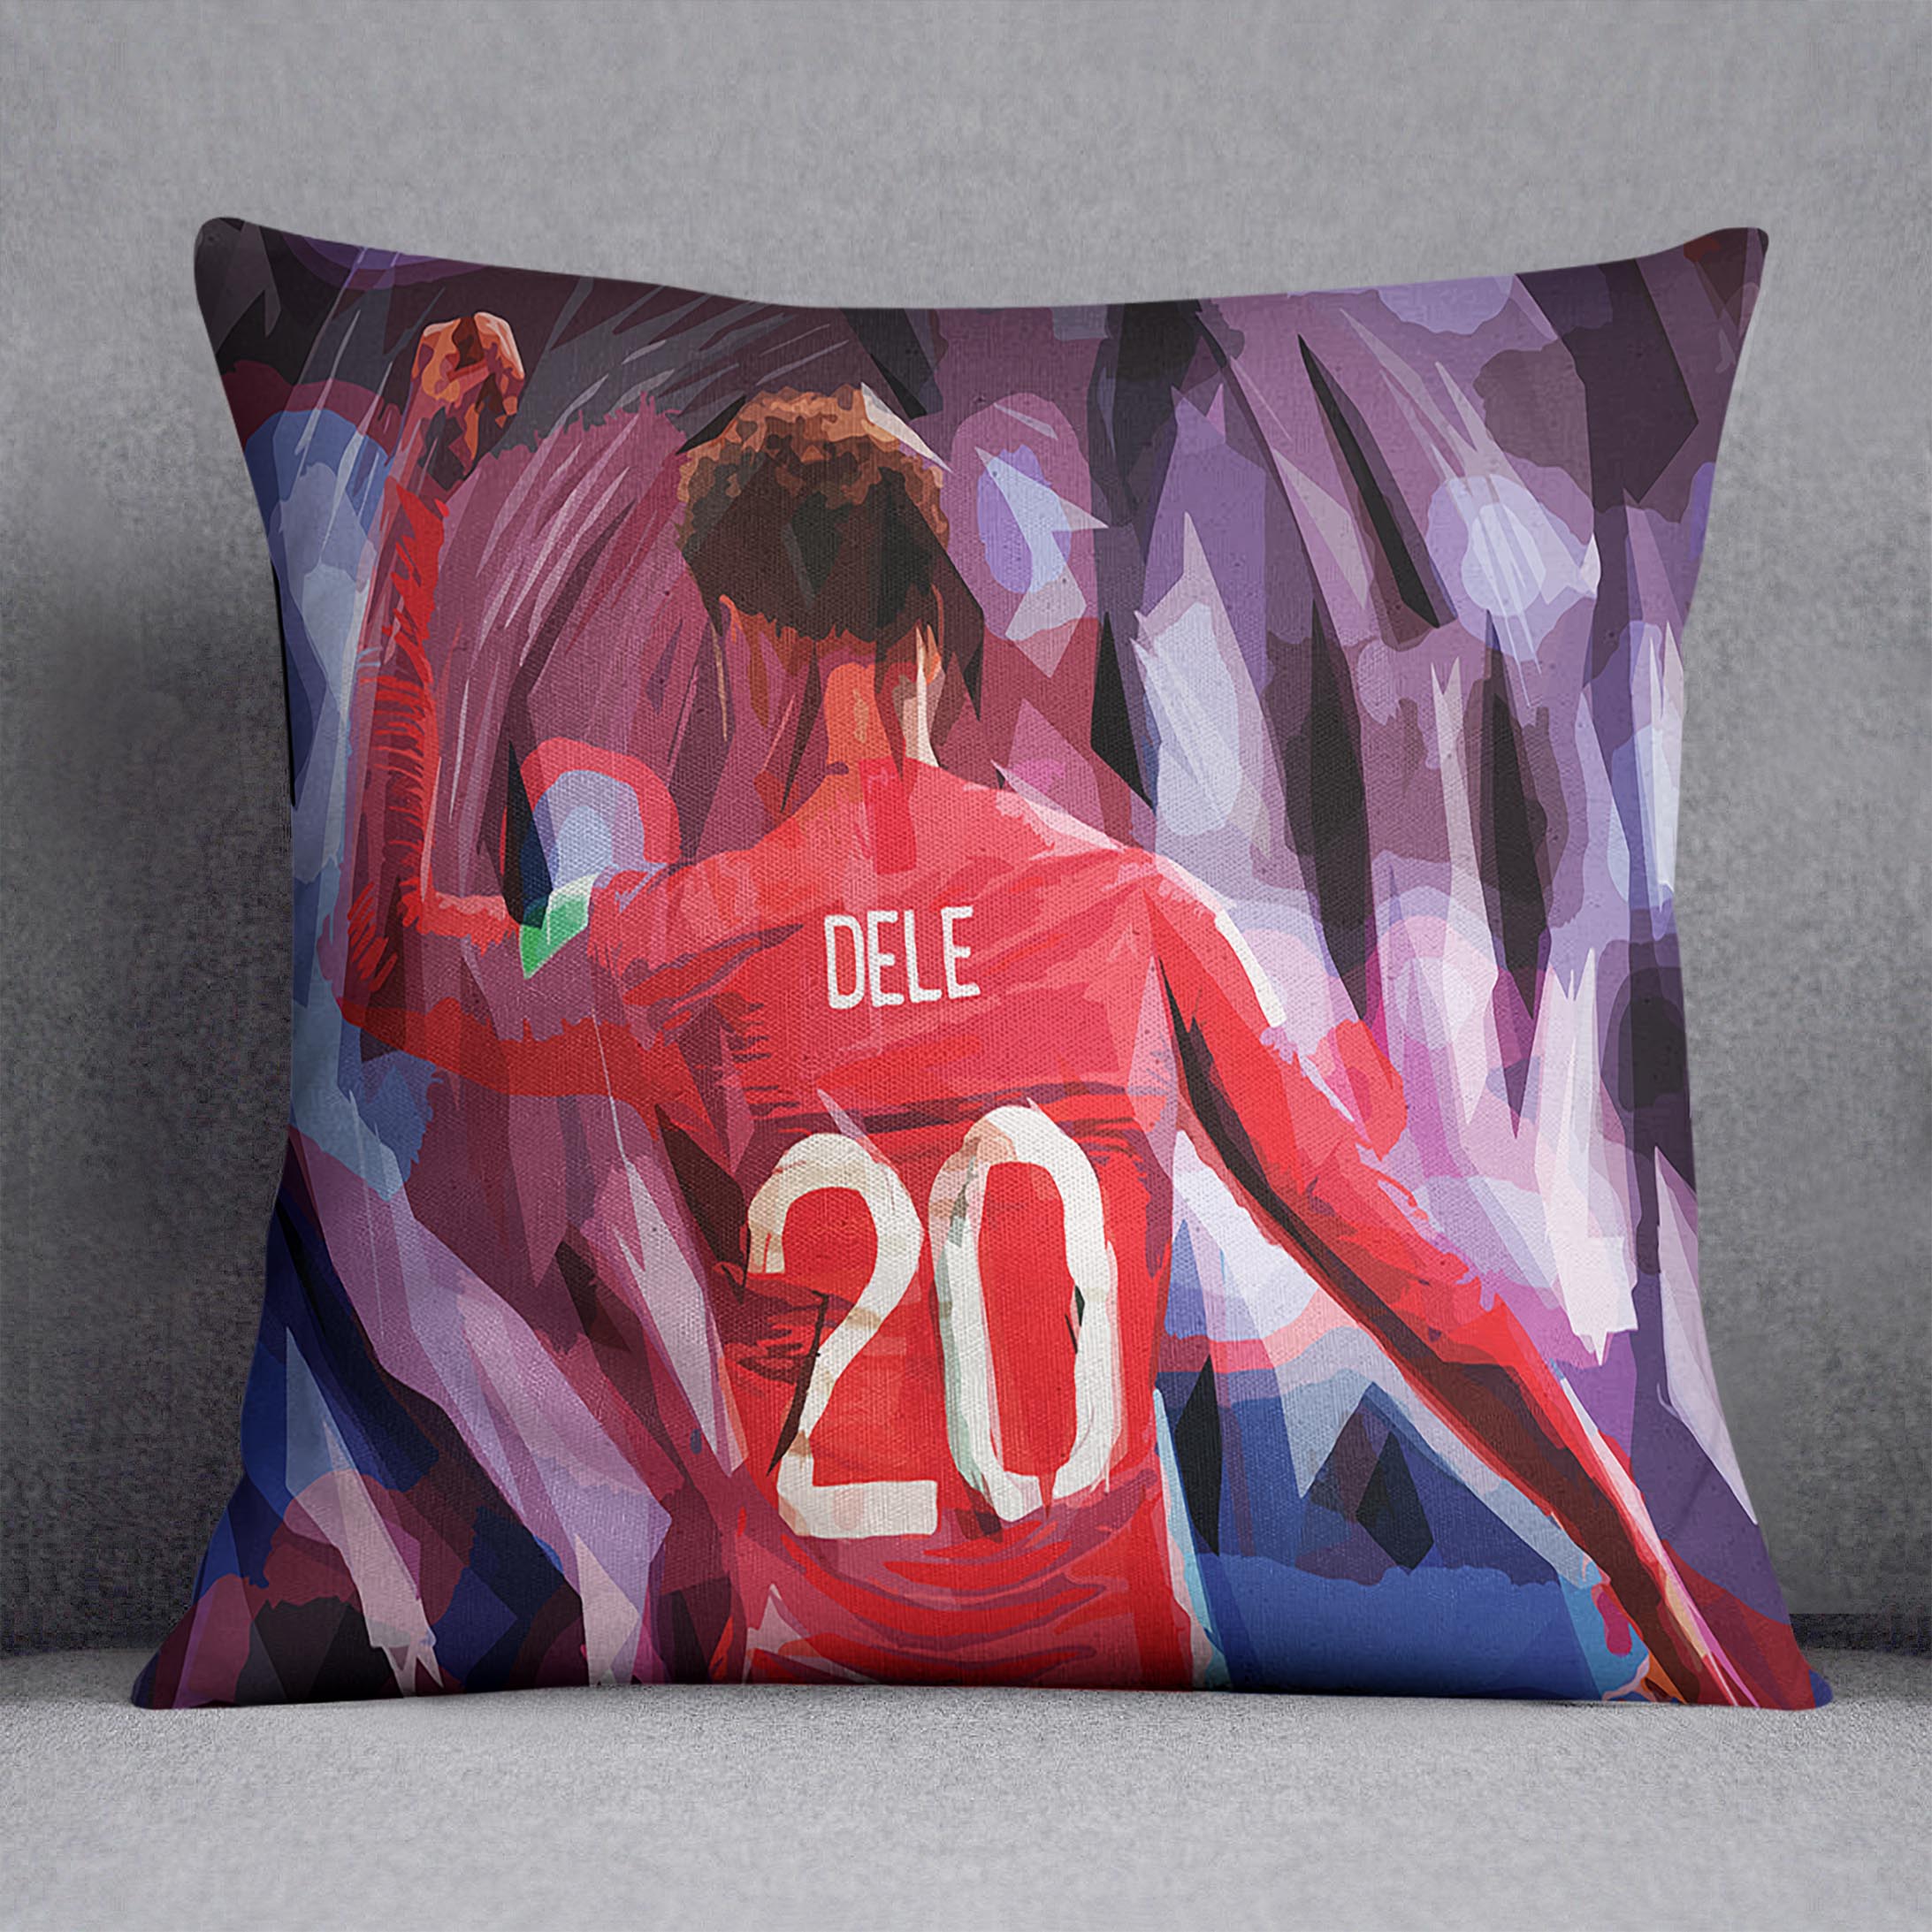 Dele Alli England Celebration Cushion